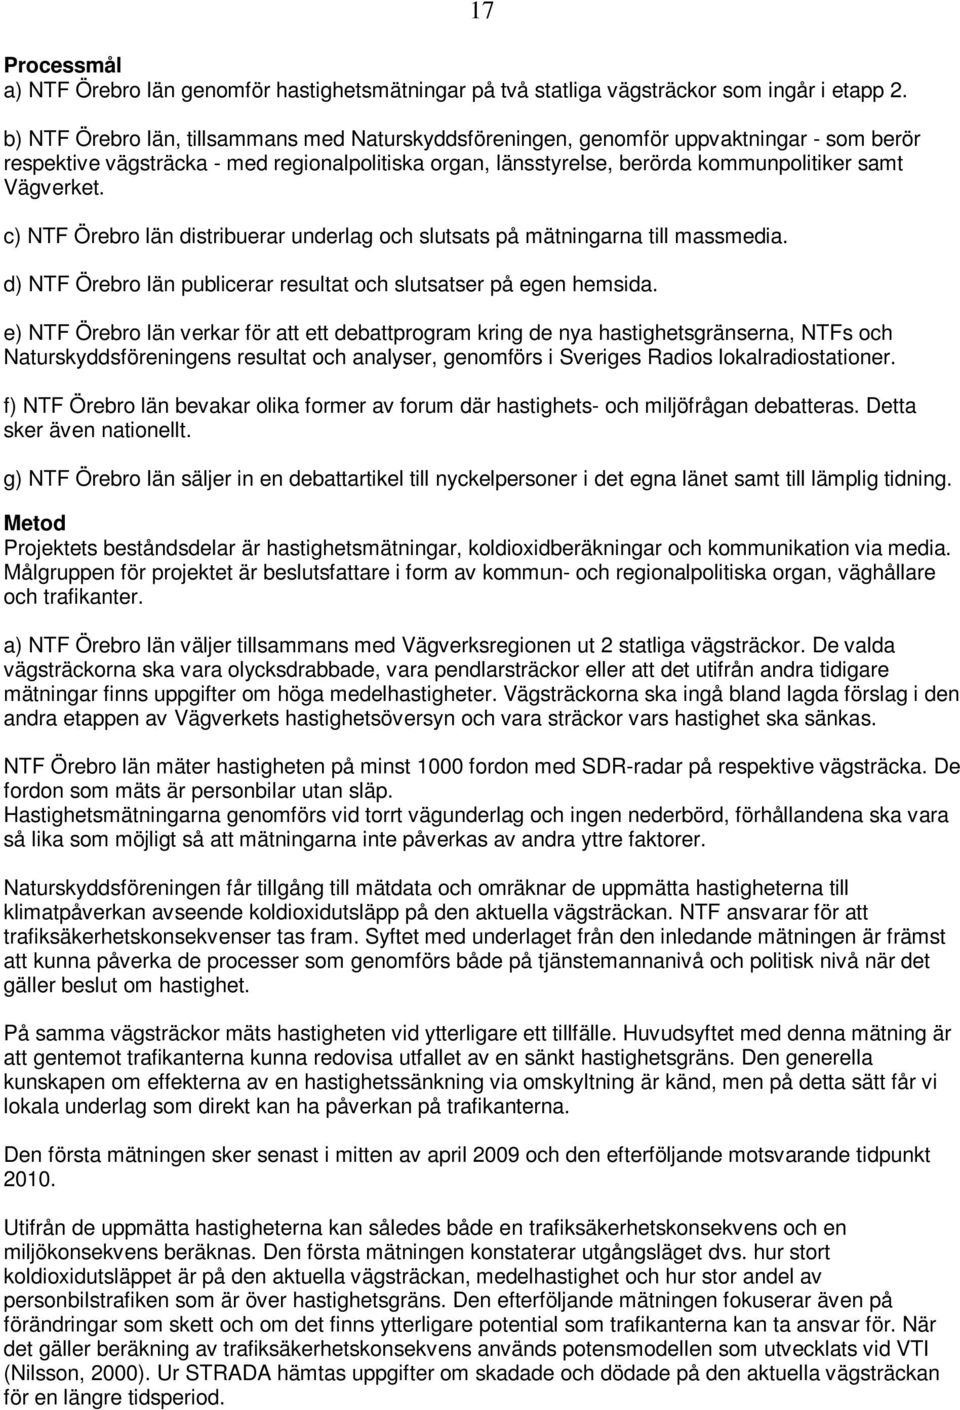 c) NTF Örebro län distribuerar underlag och slutsats på mätningarna till massmedia. 17 d) NTF Örebro län publicerar resultat och slutsatser på egen hemsida.